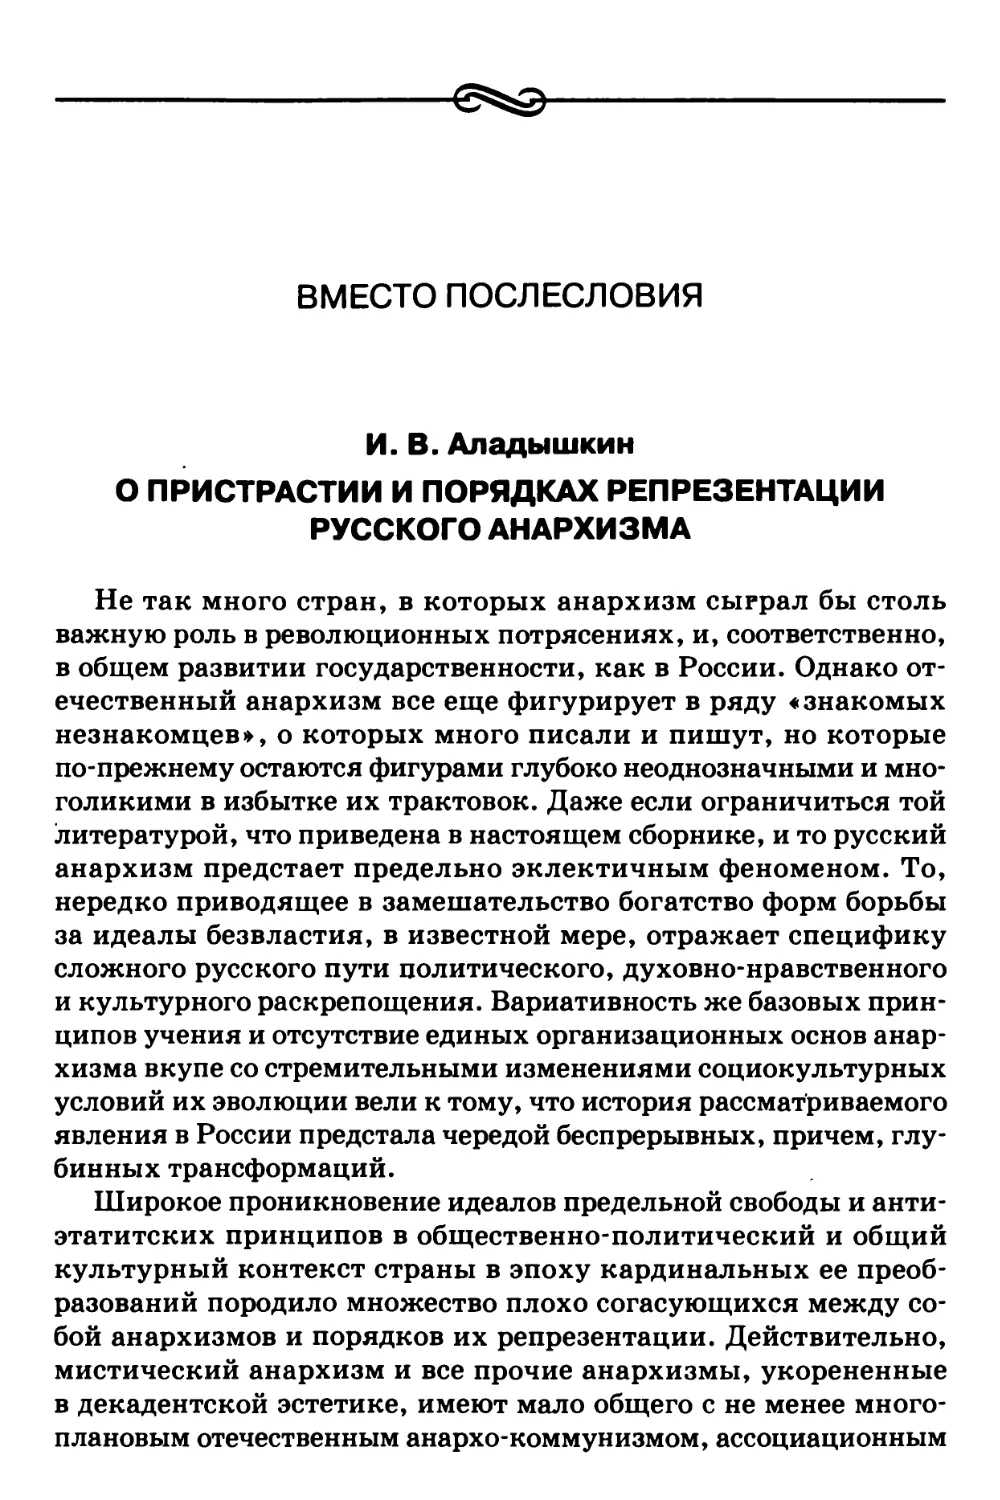 Вместо послесловия. И.В. Аладышкин – О пристрастии и порядках репрезентации русского анархизма